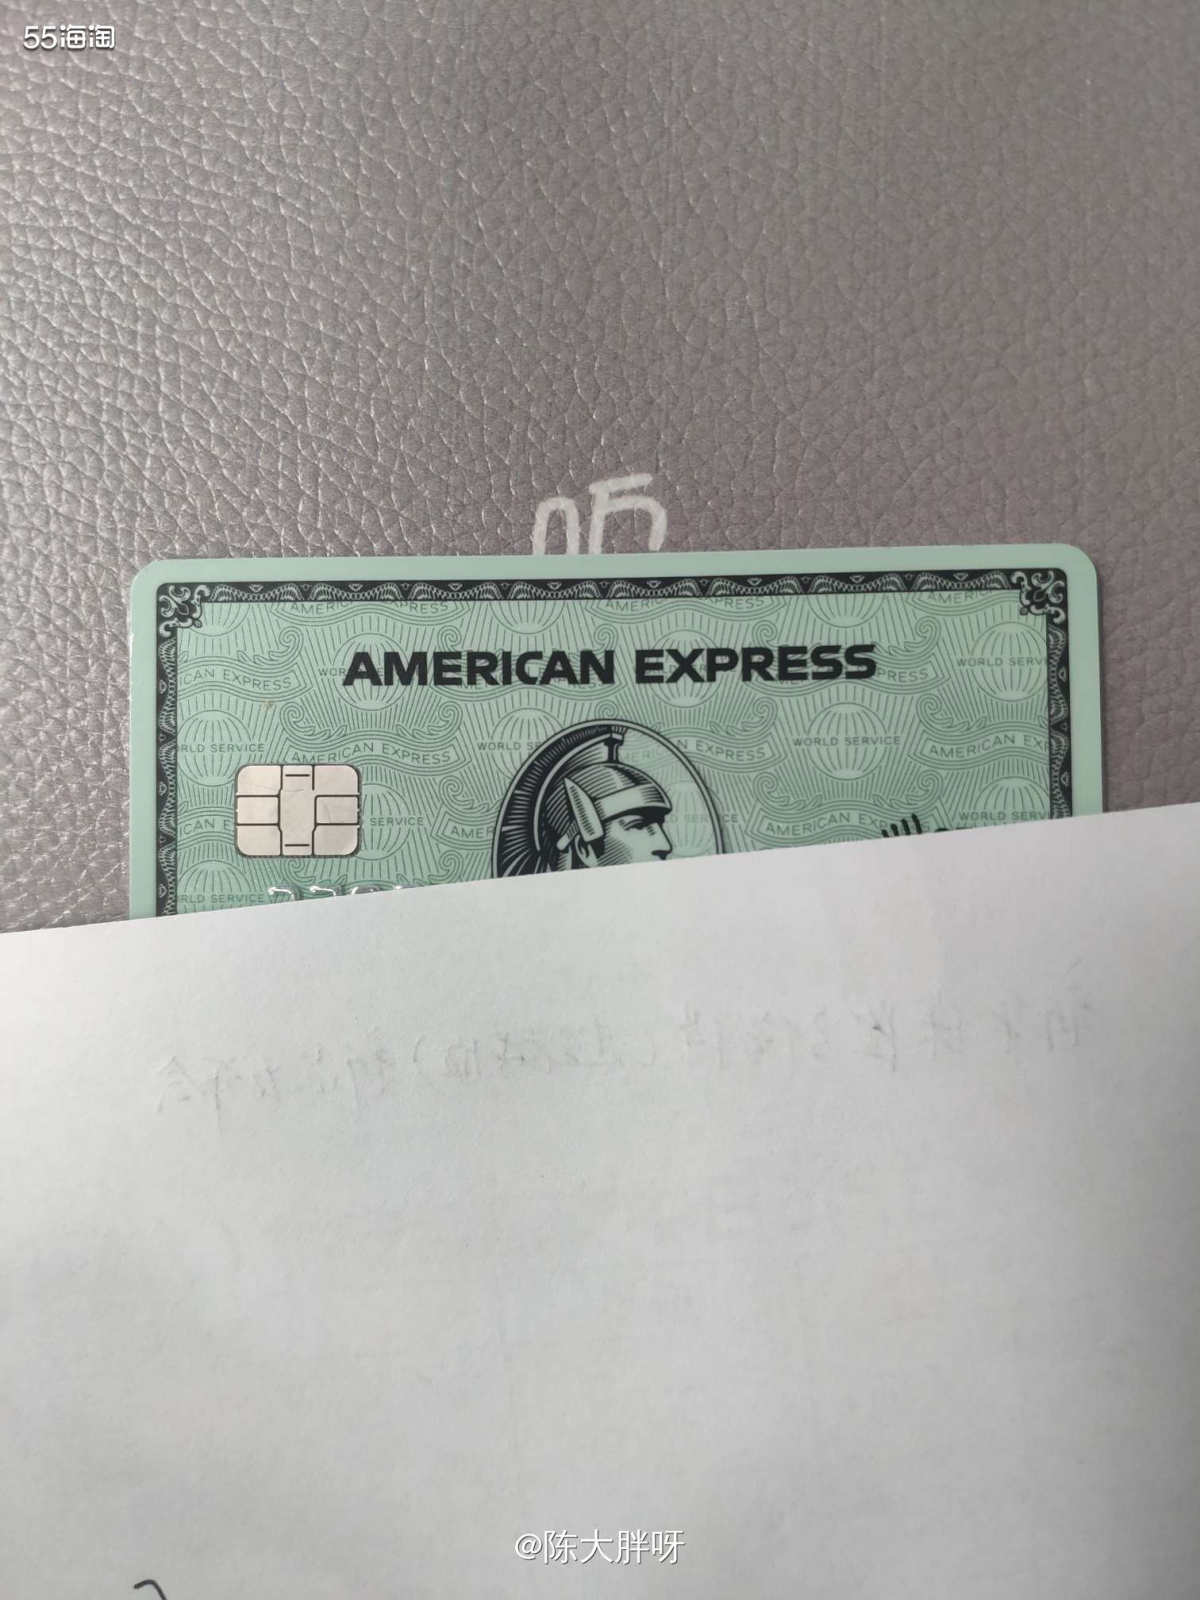 #美国运通卡表白#我的第一张运通卡  🙌🏻有多少小伙伴跟